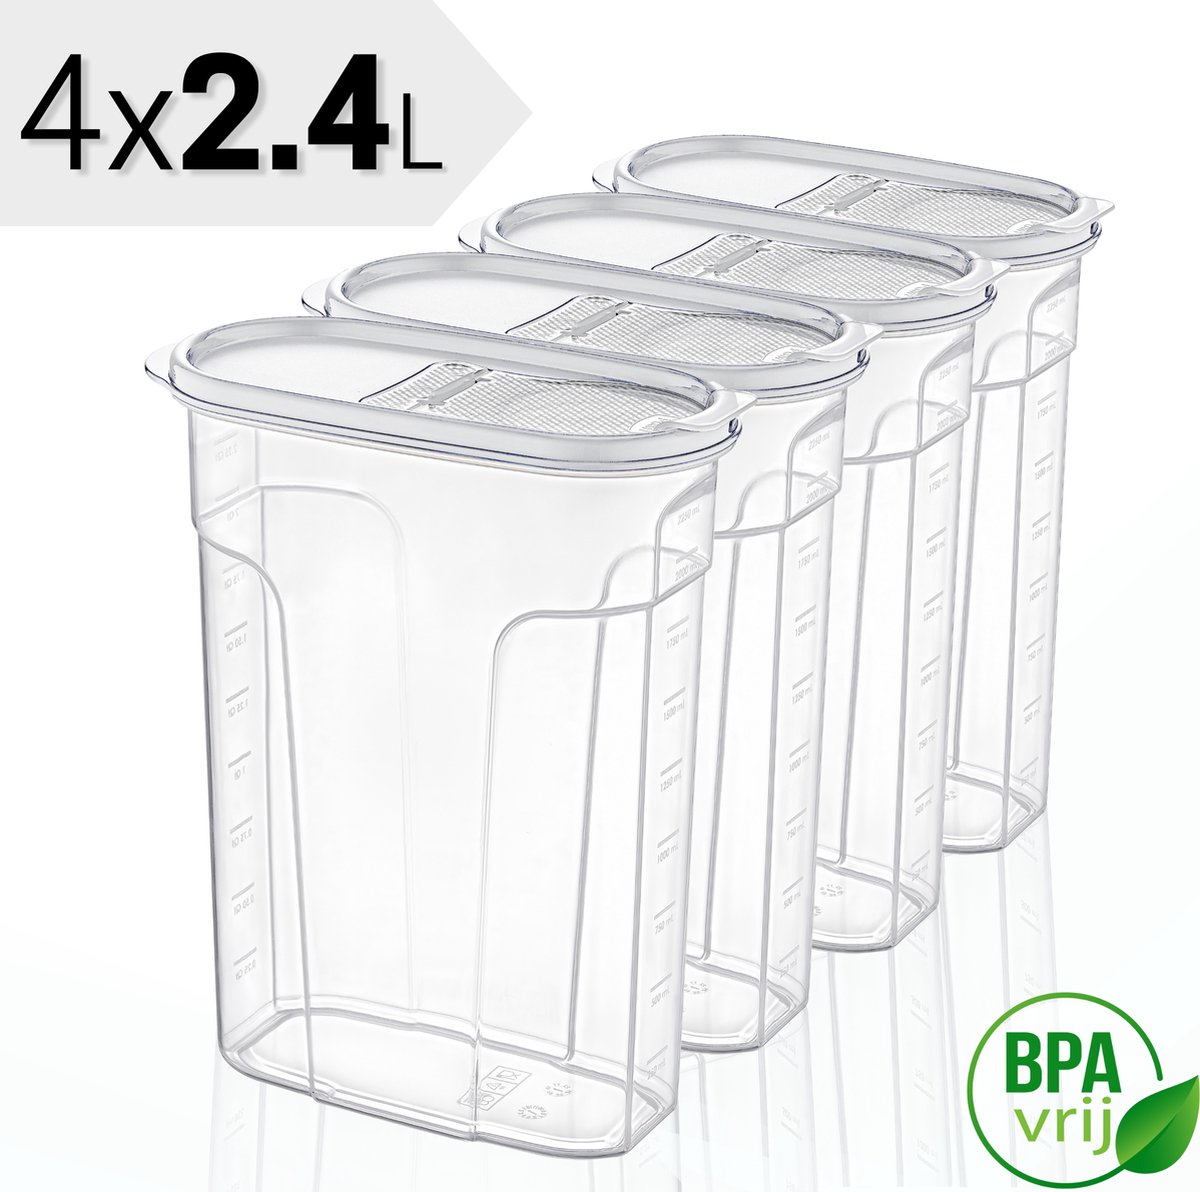 Voorraadpotten Set van 4 - 4x2.4L met witte deksel Voorraadbussen - Vershouddoos - 4 Stuks - BPA vrij - Kunststof